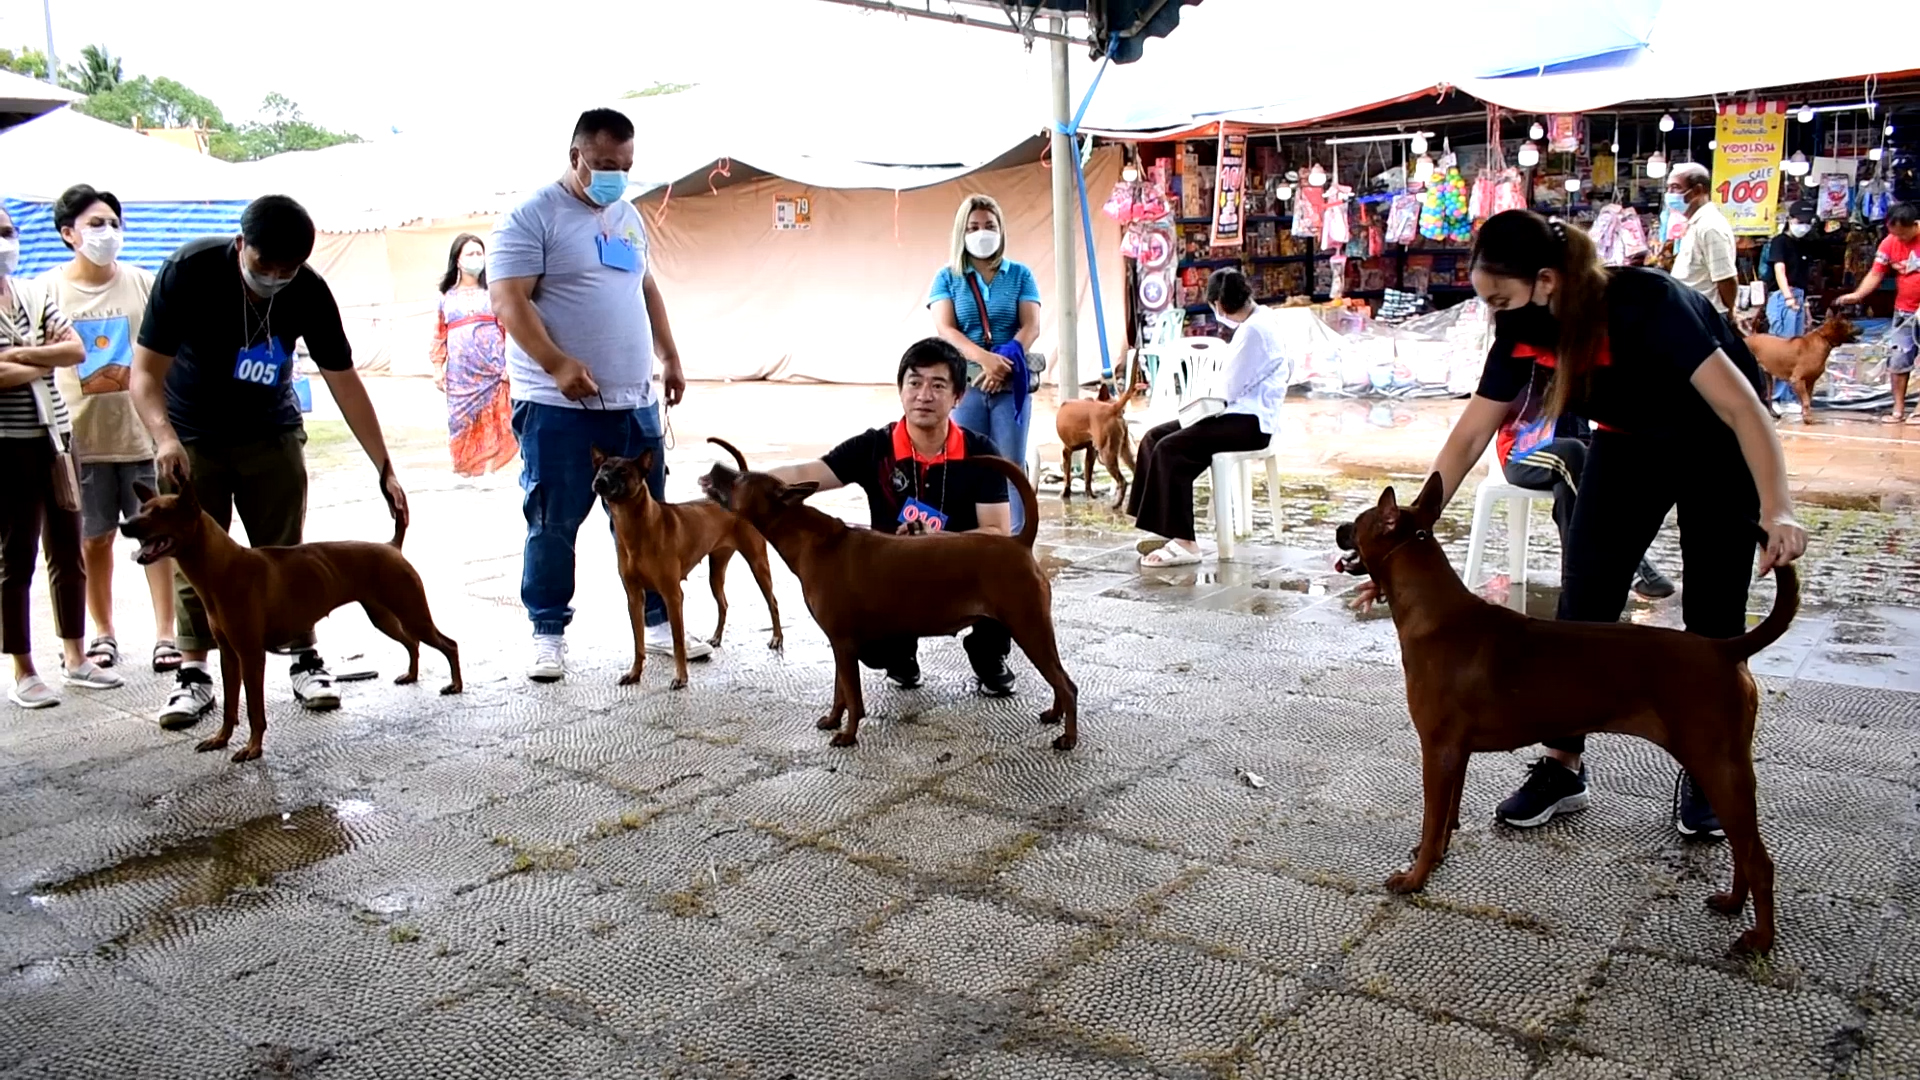 จังหวัดตราด จัดประกวดสุนัขพันธุ์ไทยหลังอาน สุนัขดีตามคำขวัญจังหวัดตราด  ในงานวันระกำหวาน ผลไม้และของดีเมืองตราด ประจำปี 2565